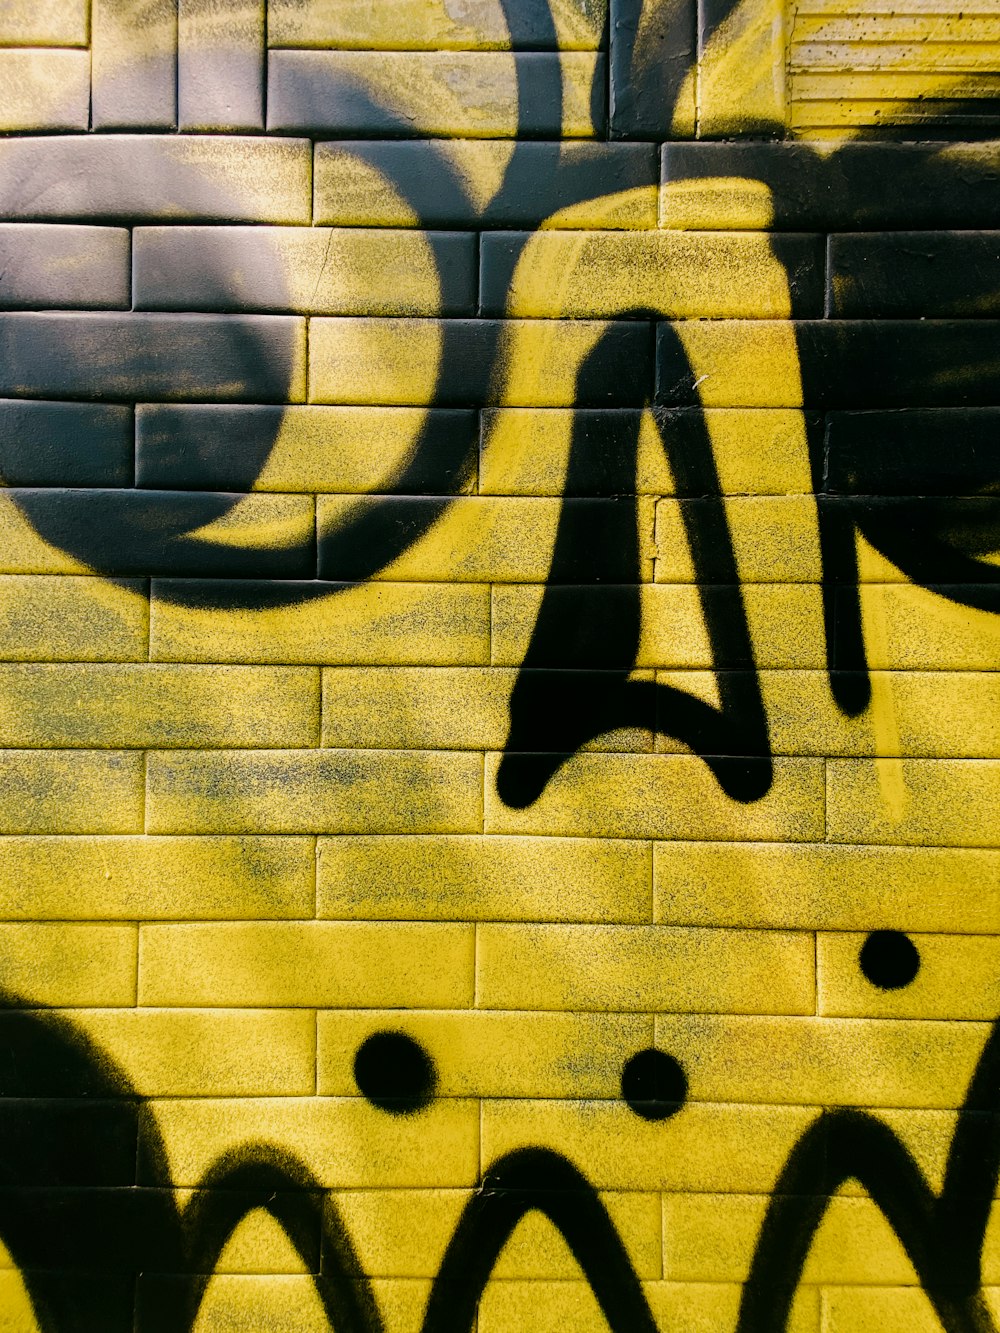 eine gelbe Ziegelmauer mit schwarzen Graffiti darauf